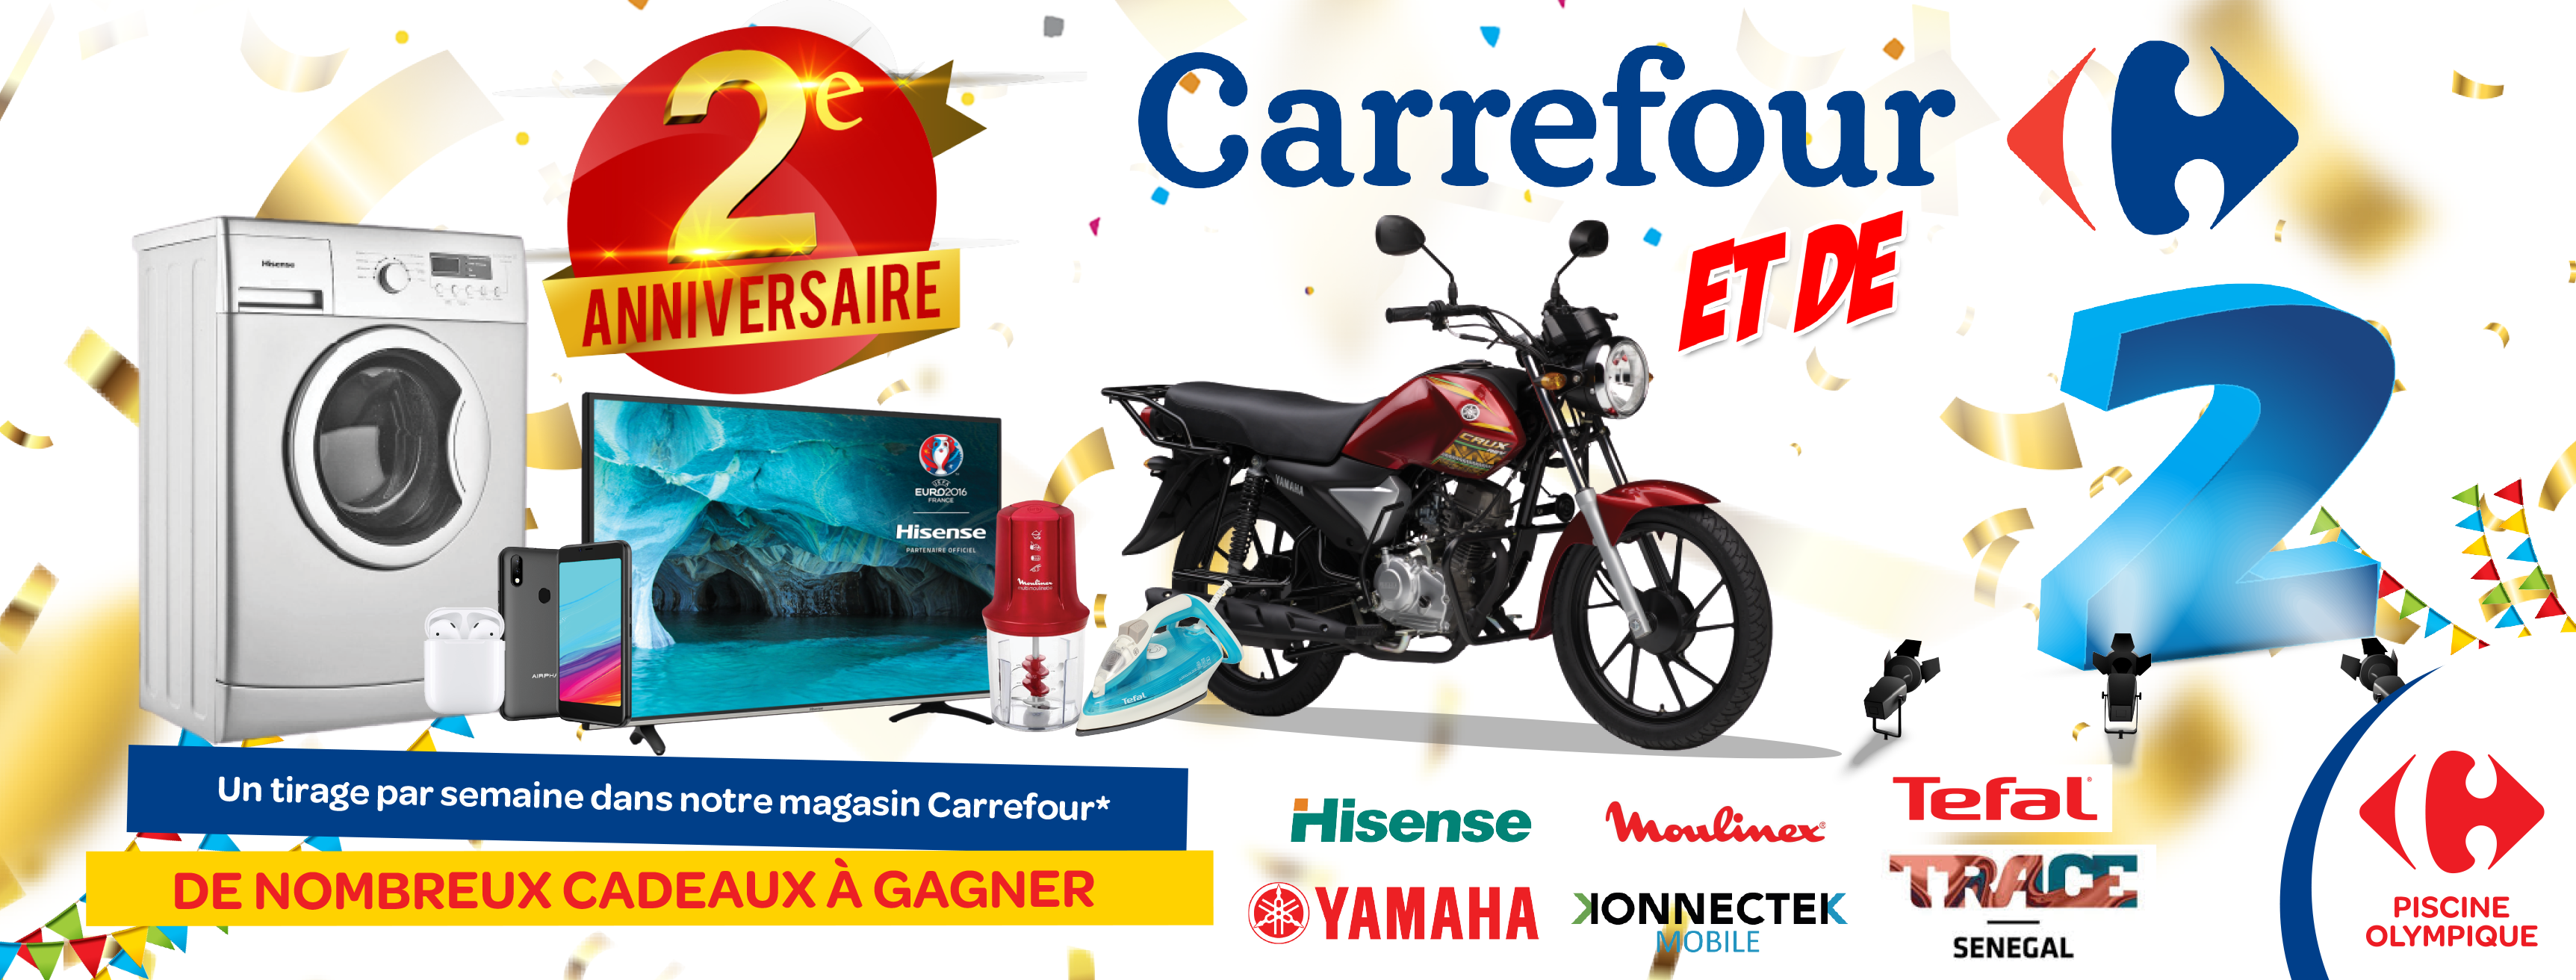 Jeu concours 2ème Anniversaire Carrefour au Sénégal